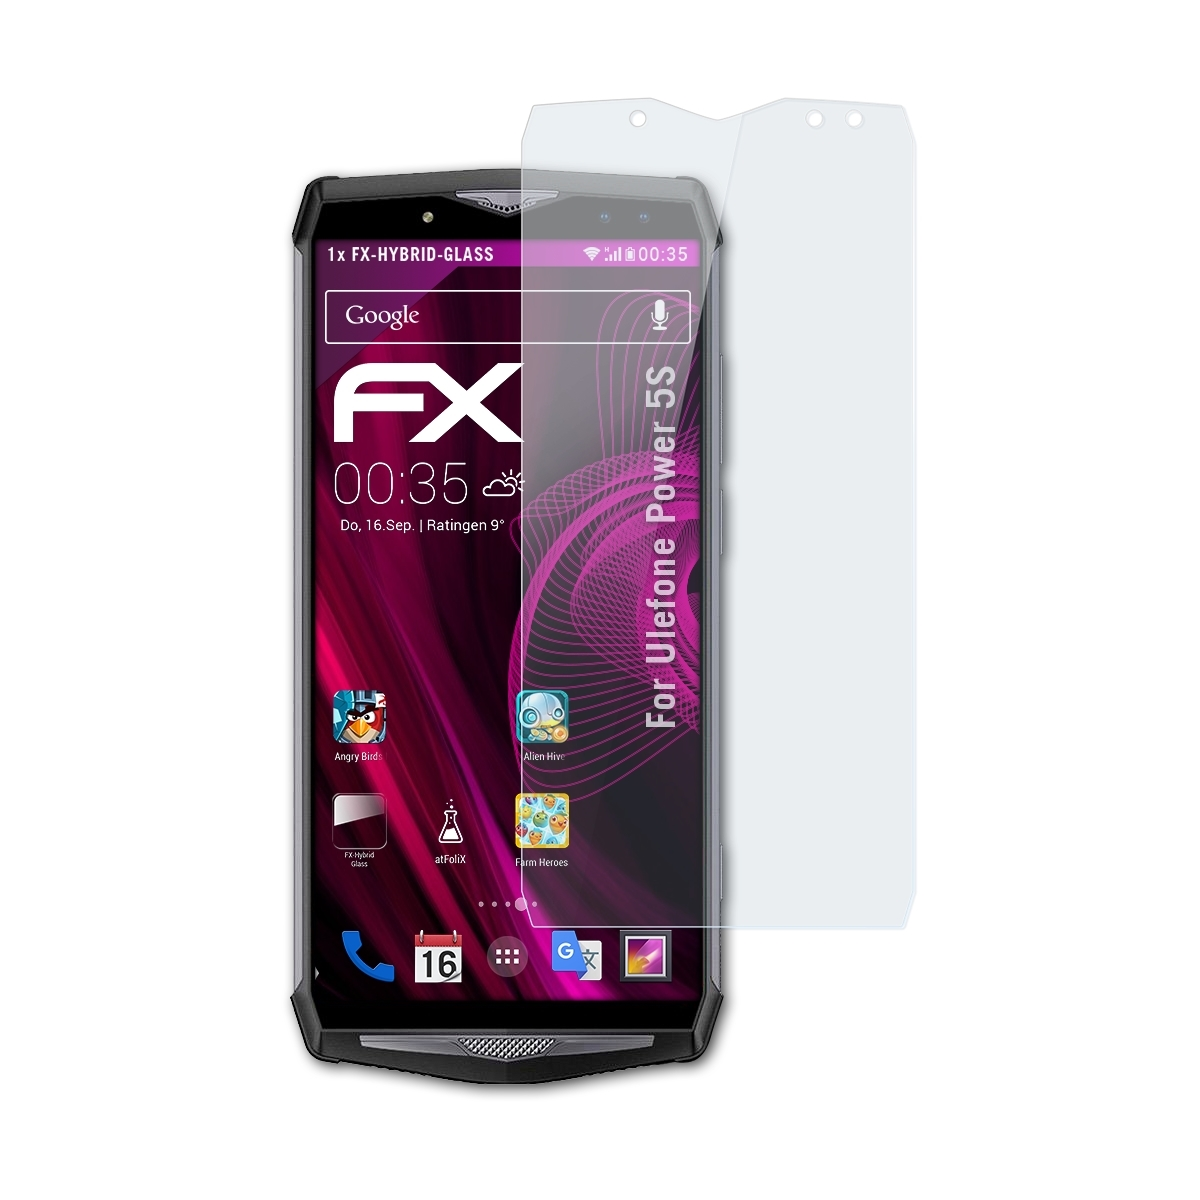 FX-Hybrid-Glass Power 5S) Ulefone ATFOLIX Schutzglas(für